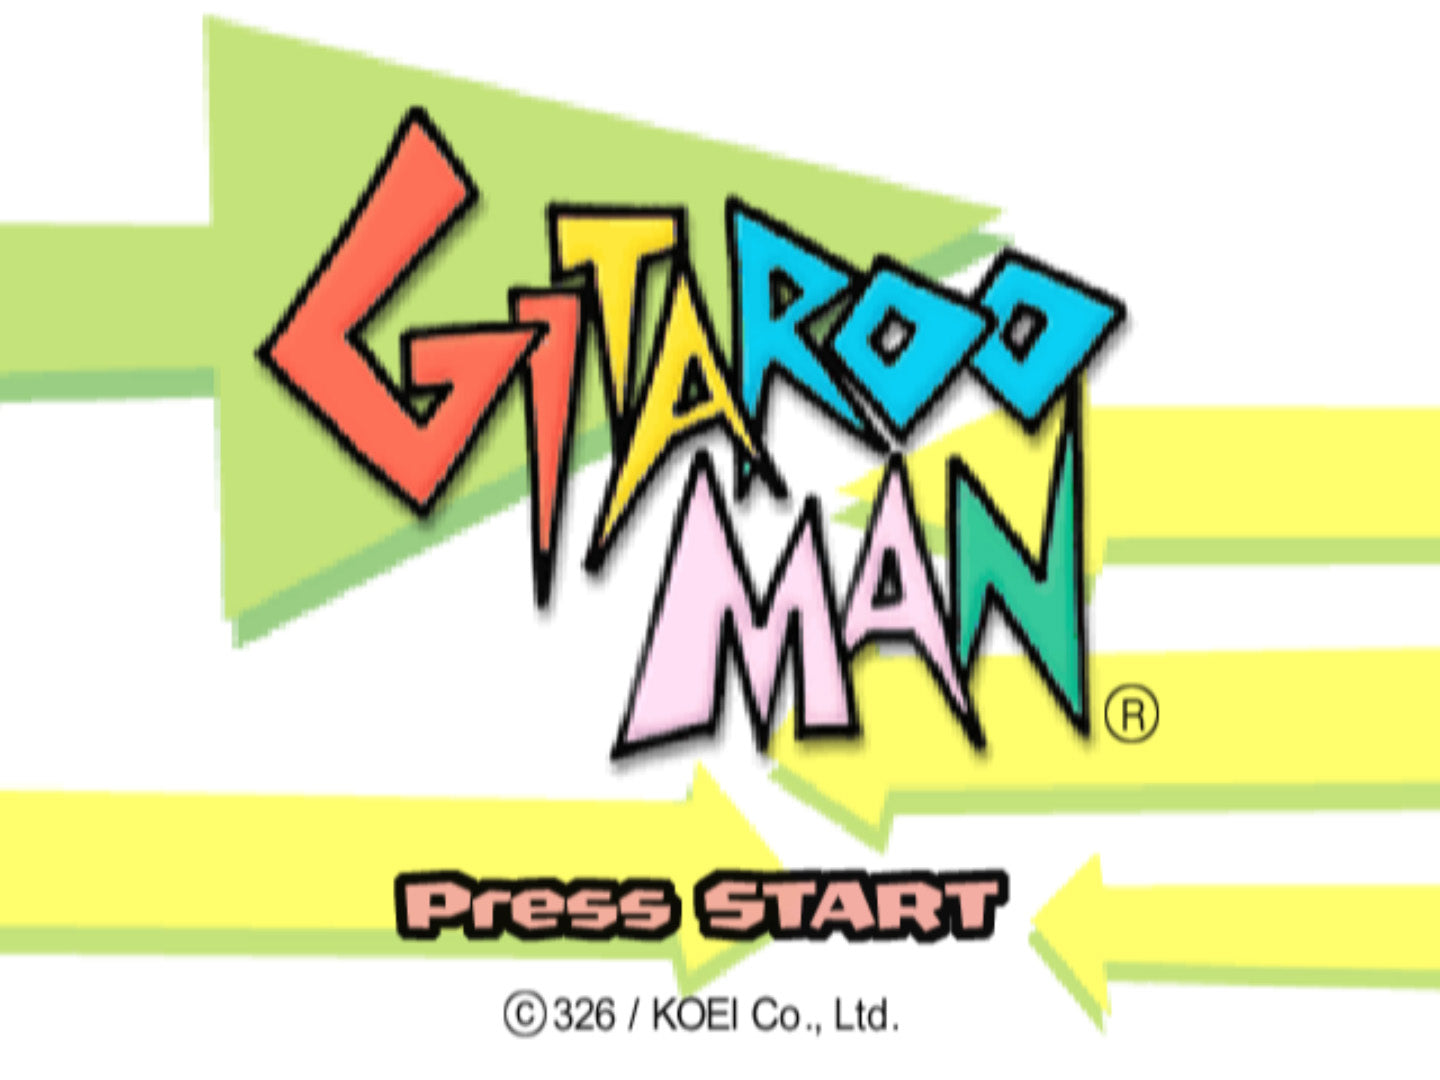 Gitaroo Man - PlayStation 2 (PS2) Game